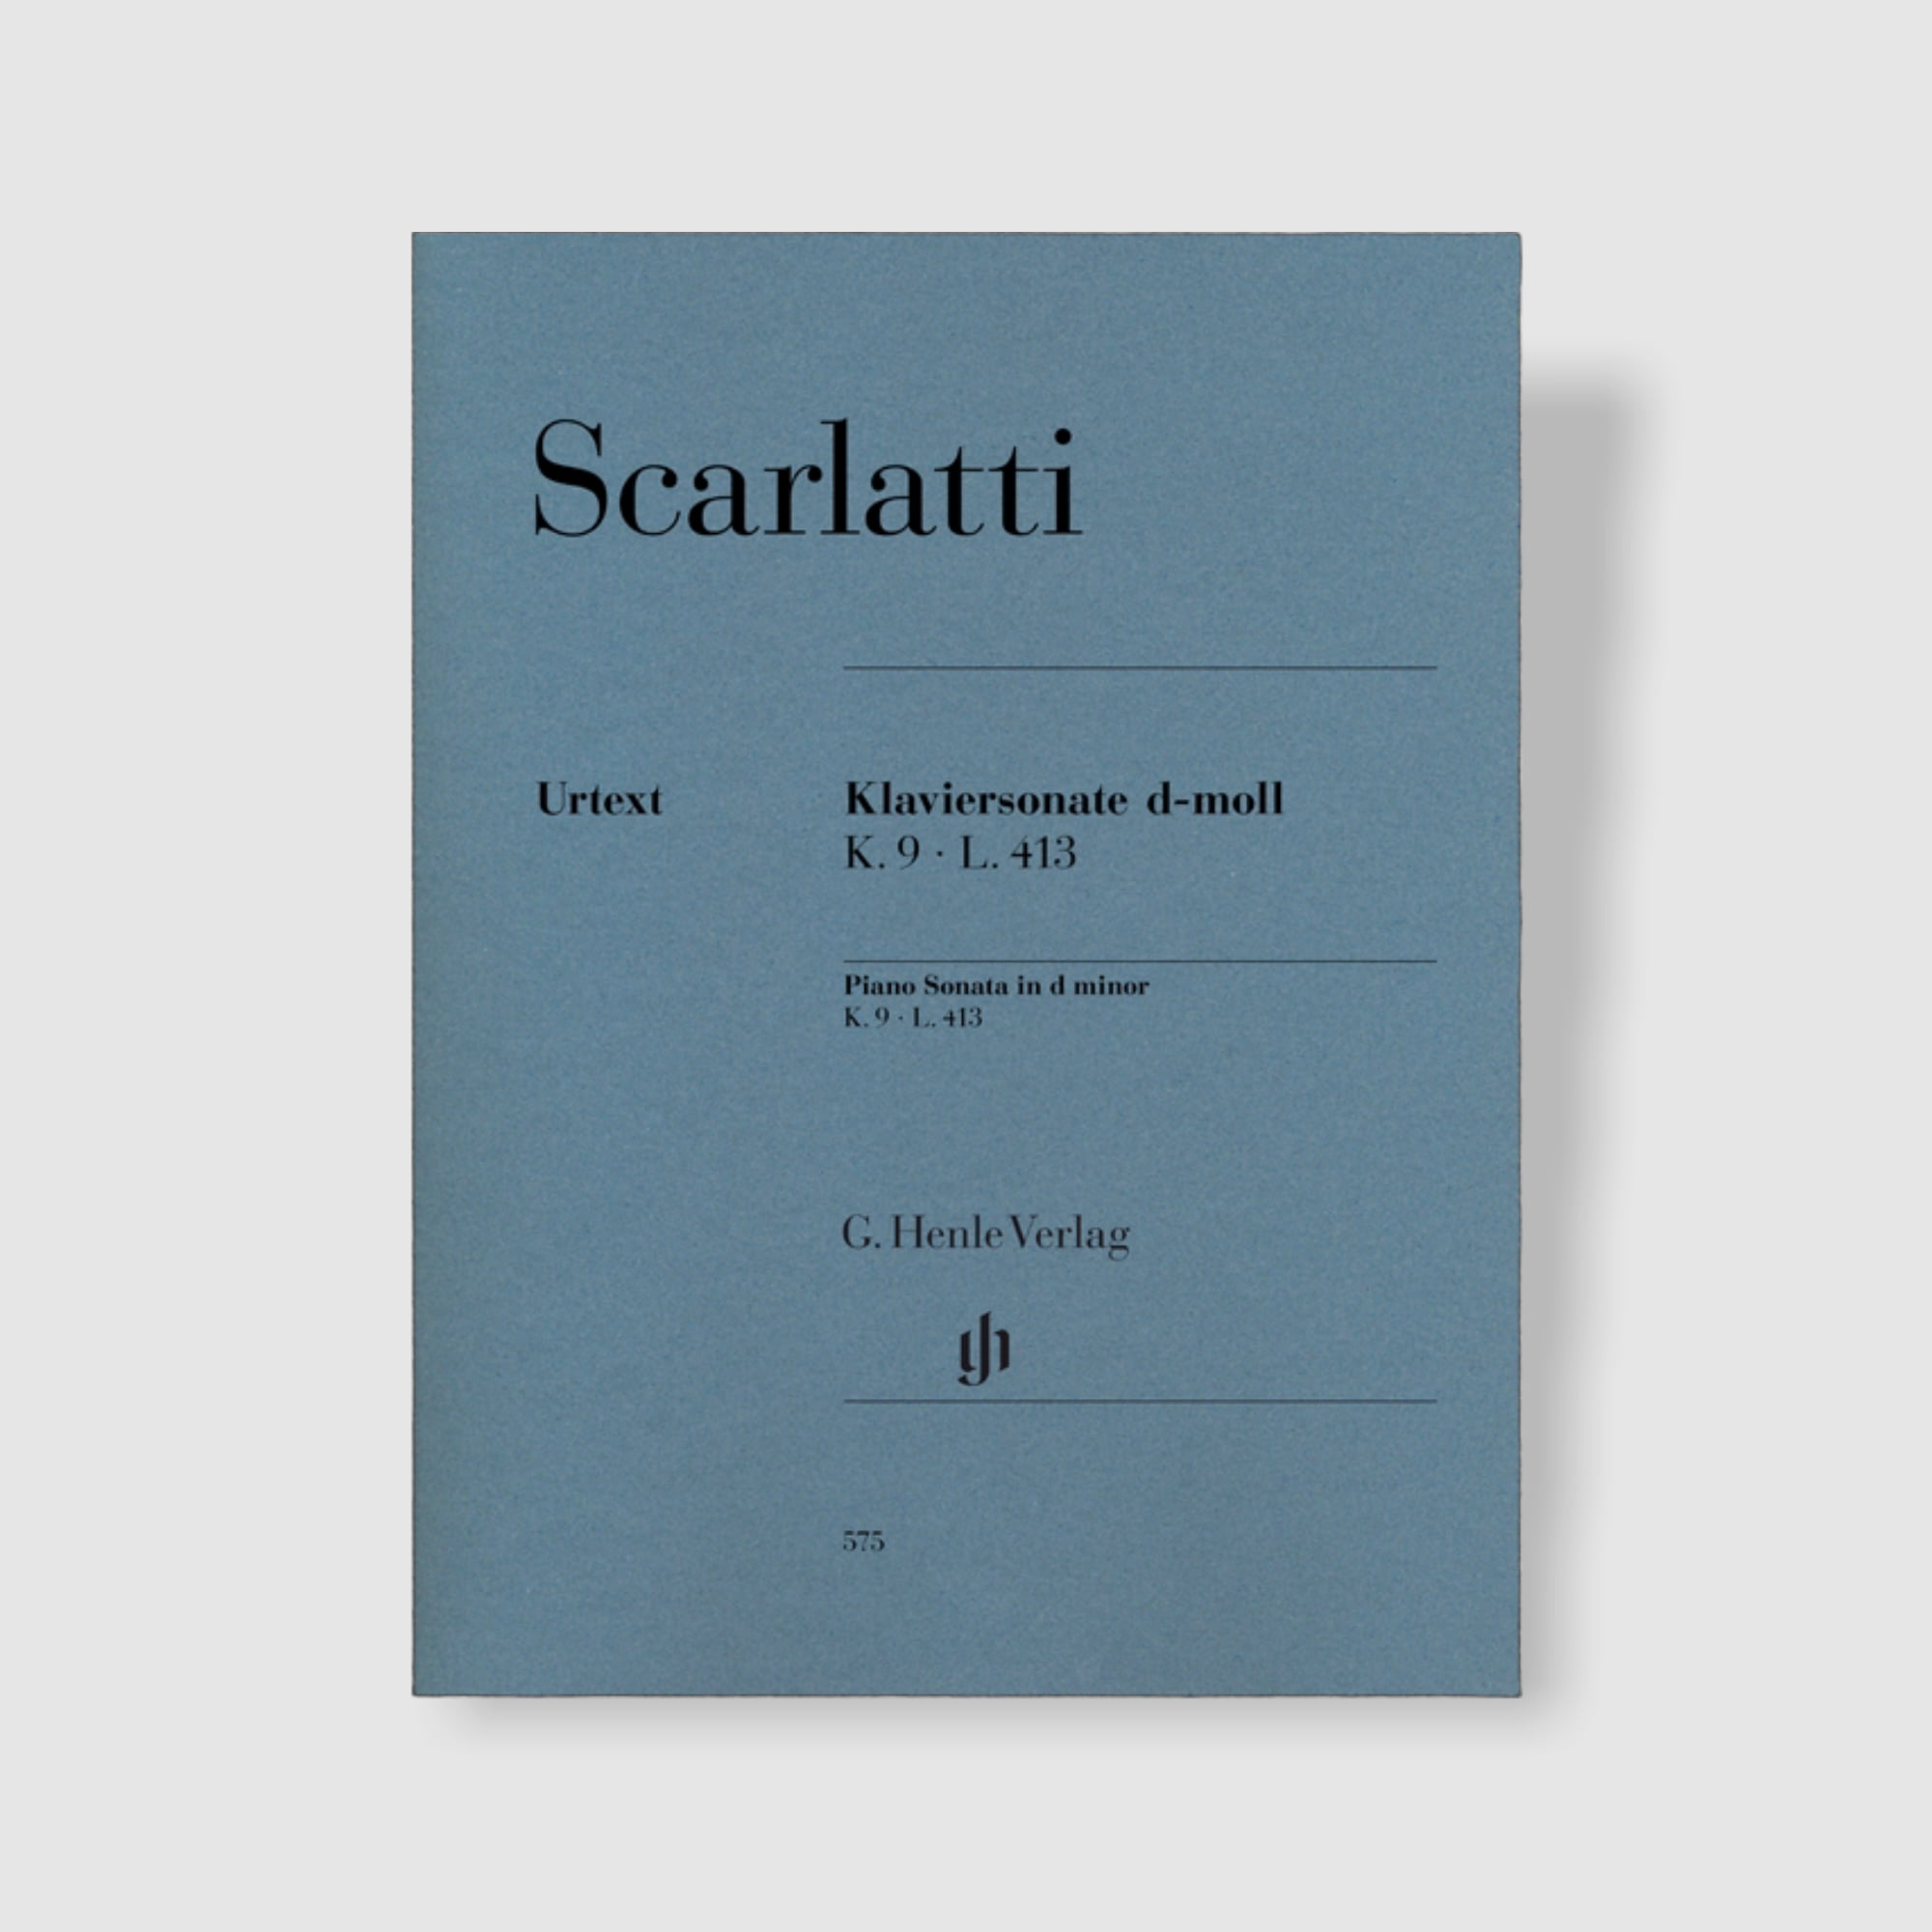 스카를라티 피아노 소나타 in d minor, K.9, L.413